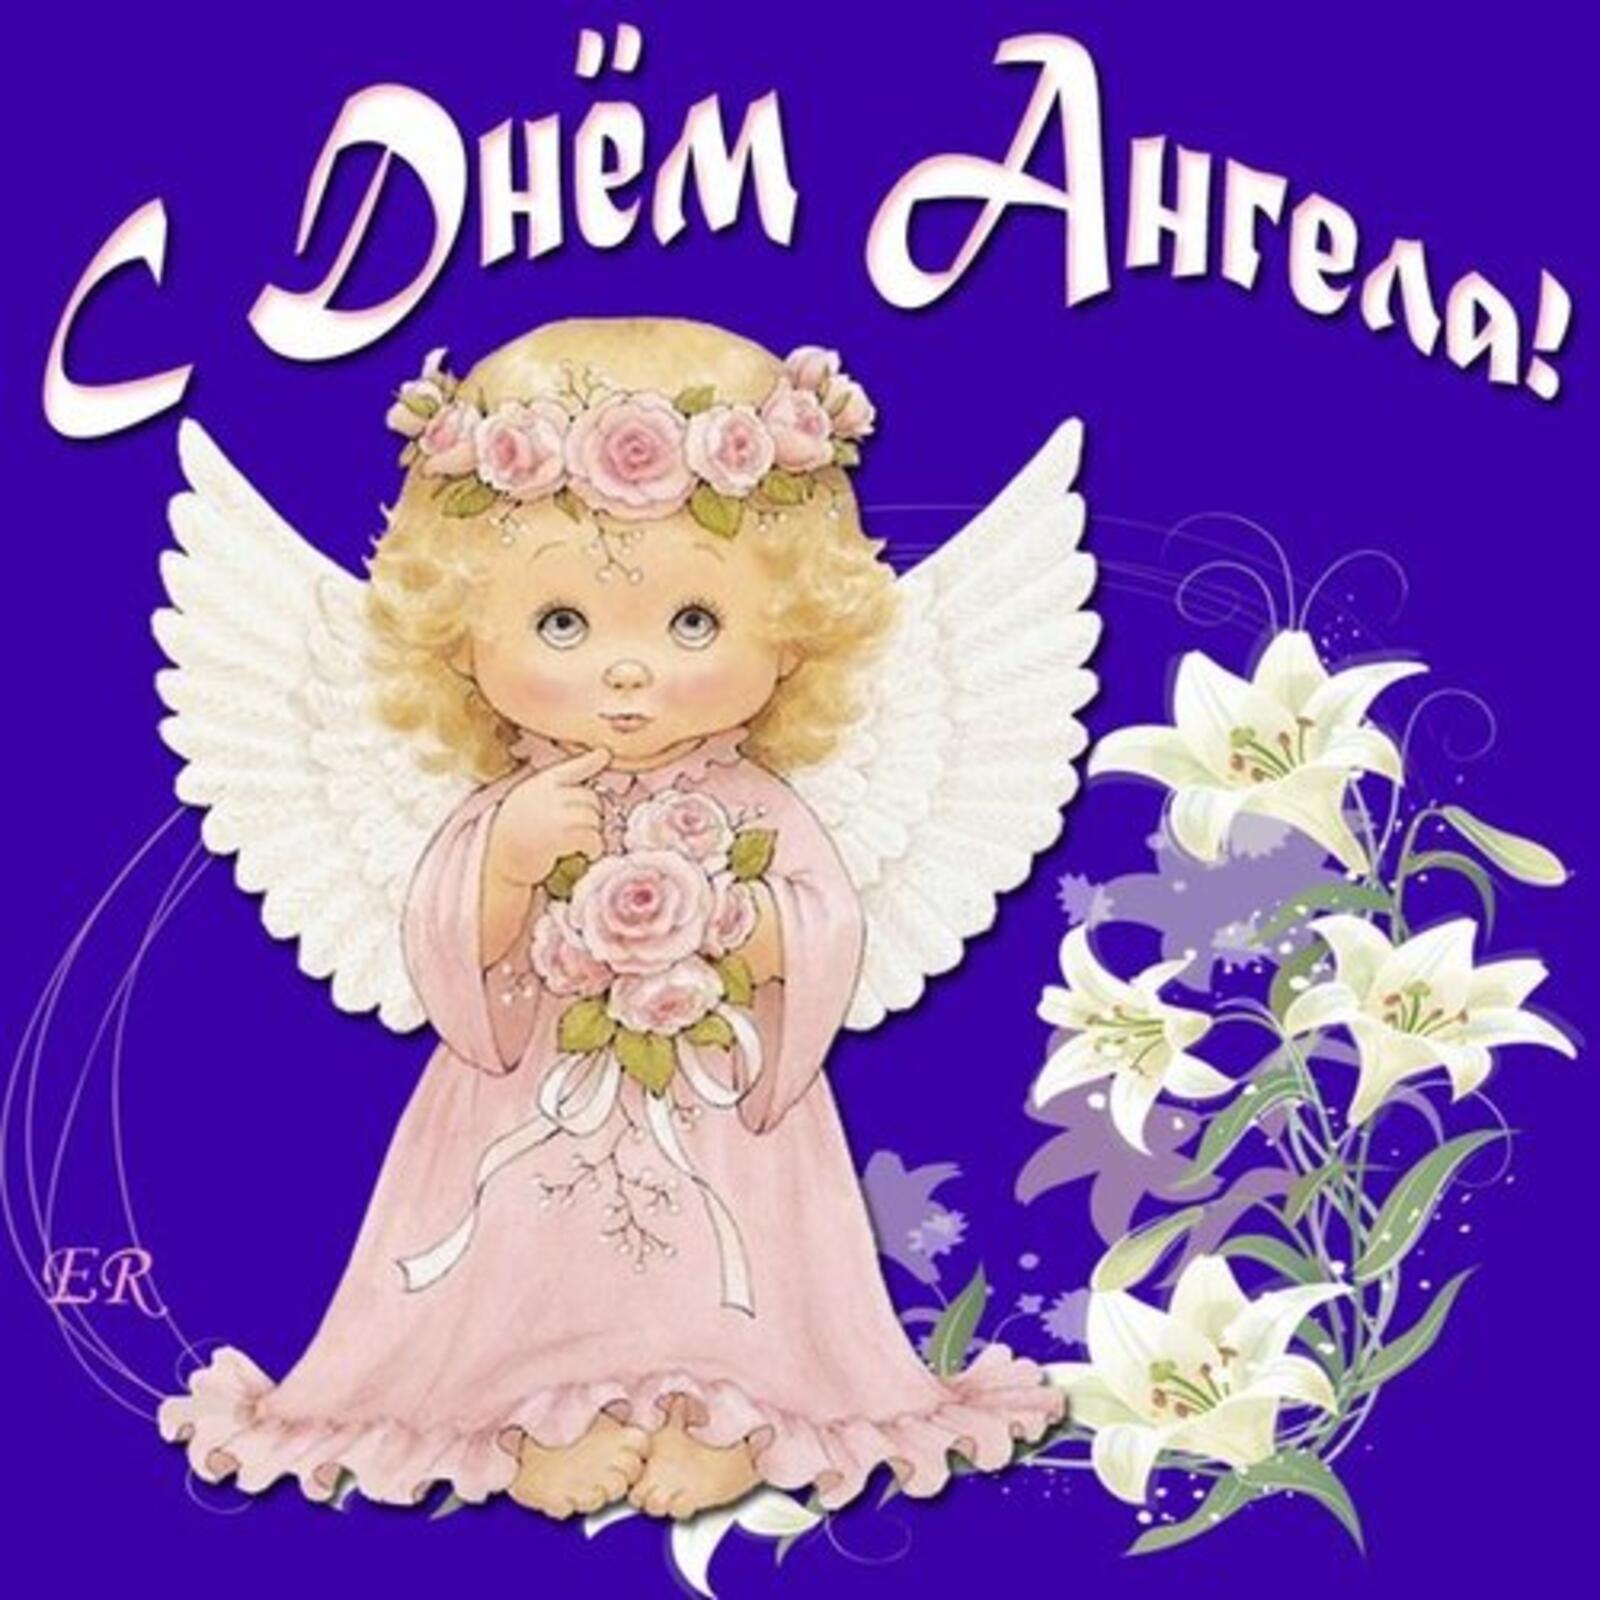 一张以生日贺卡 天使之日鲜花 鲜花为主题的明信片